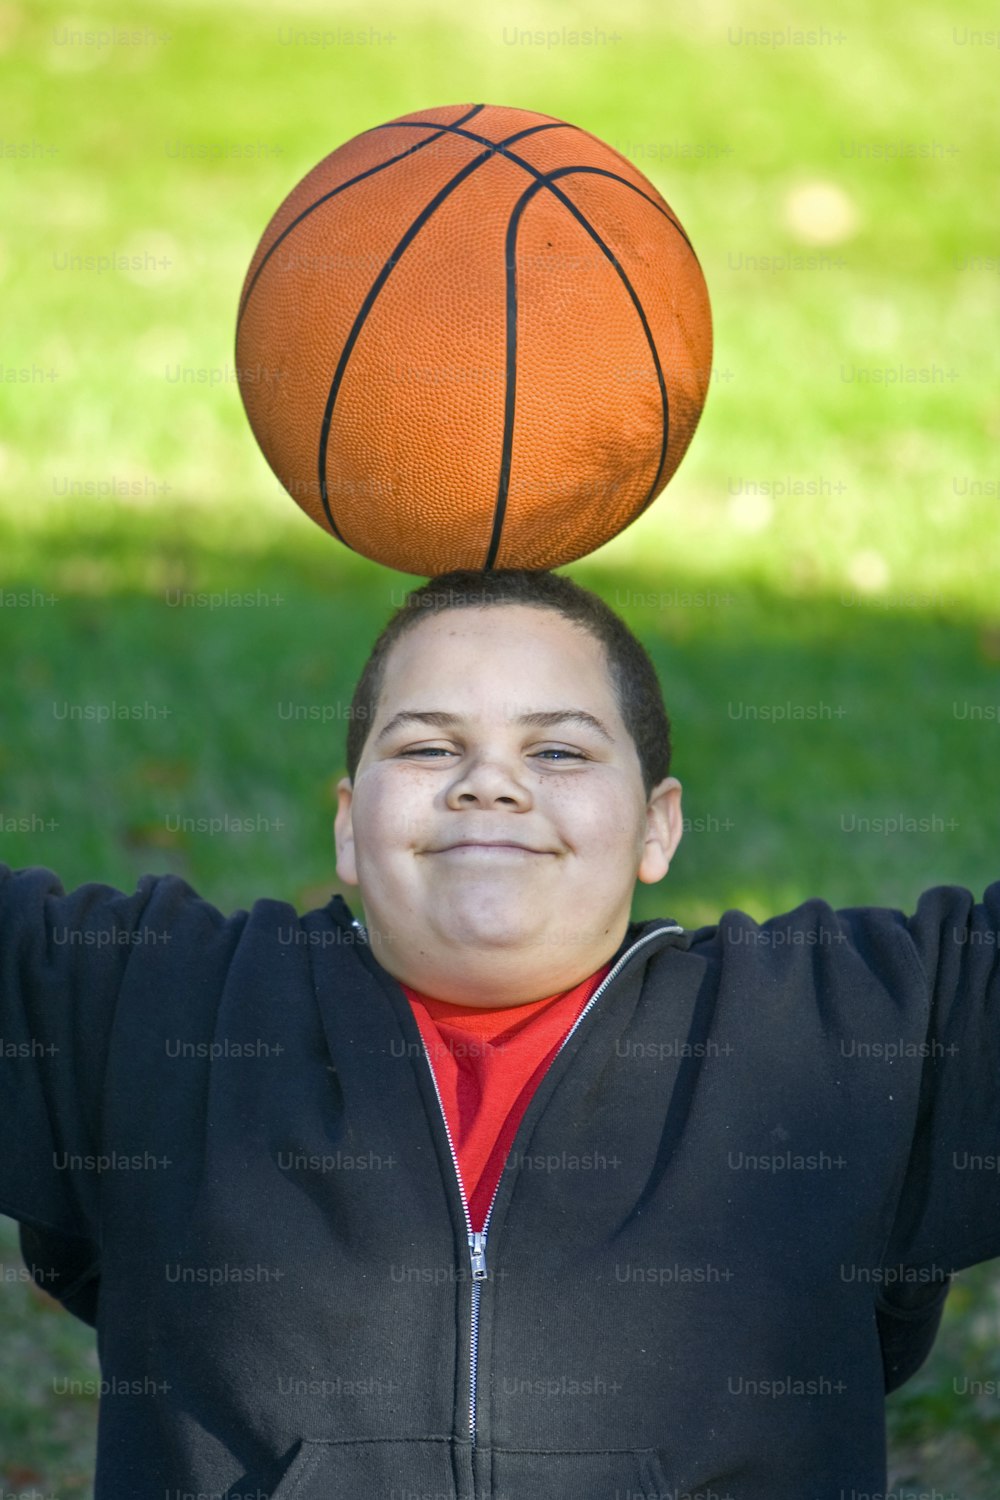 Junge mit Basketball balanciert auf dem Kopf